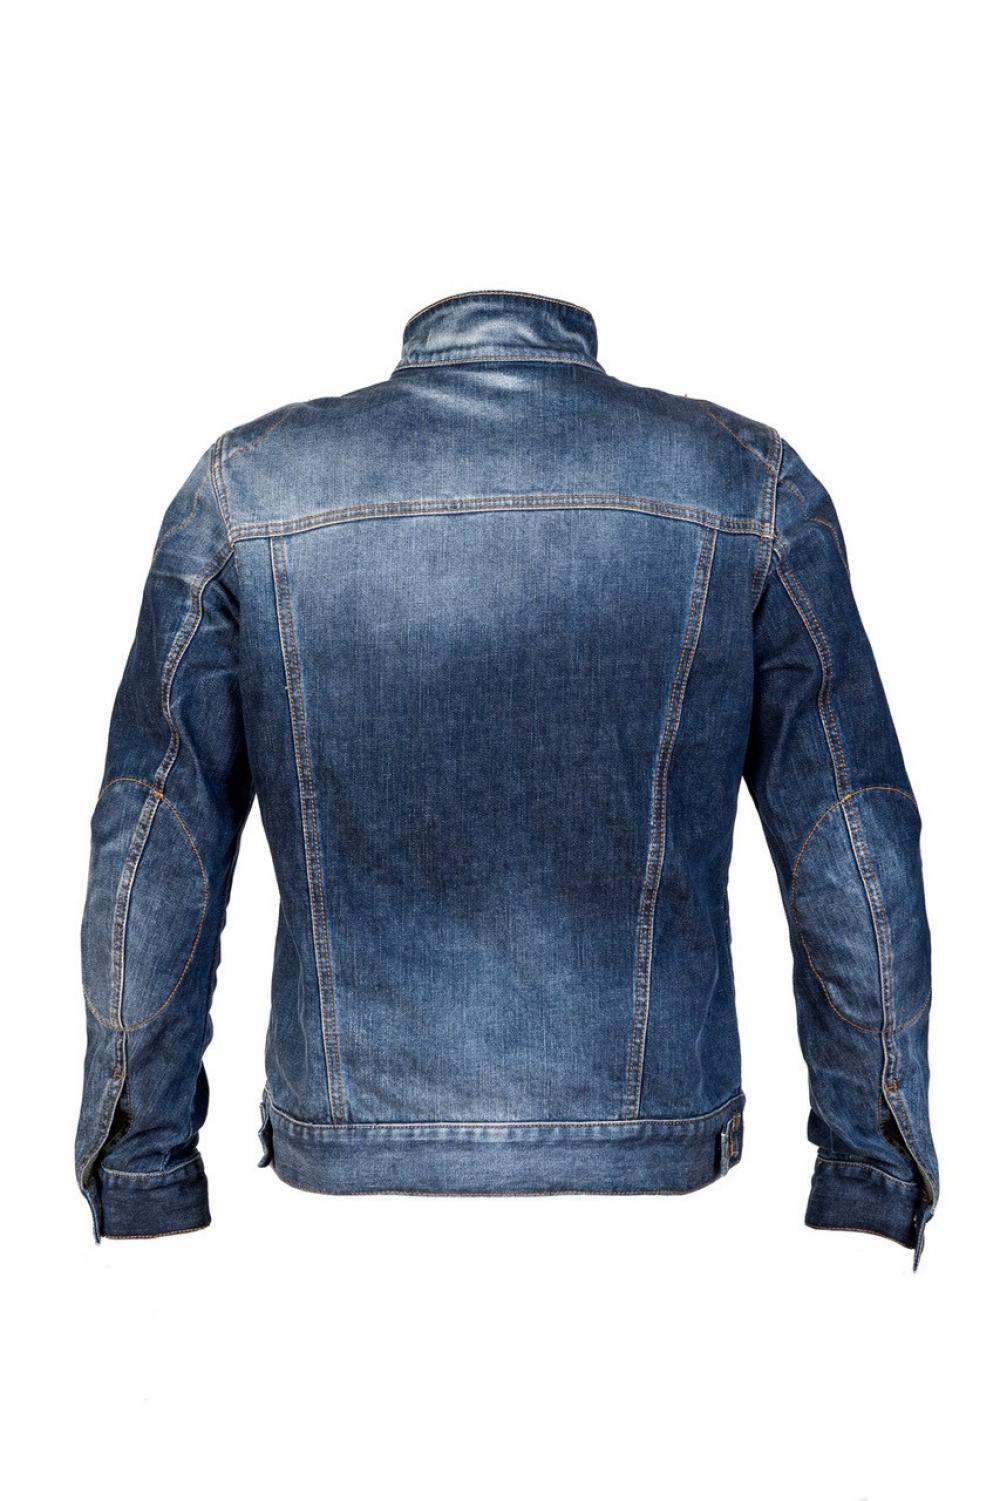 Abbigliamento tecnico moto: Voglia di jeans, ecco i 5 migliori